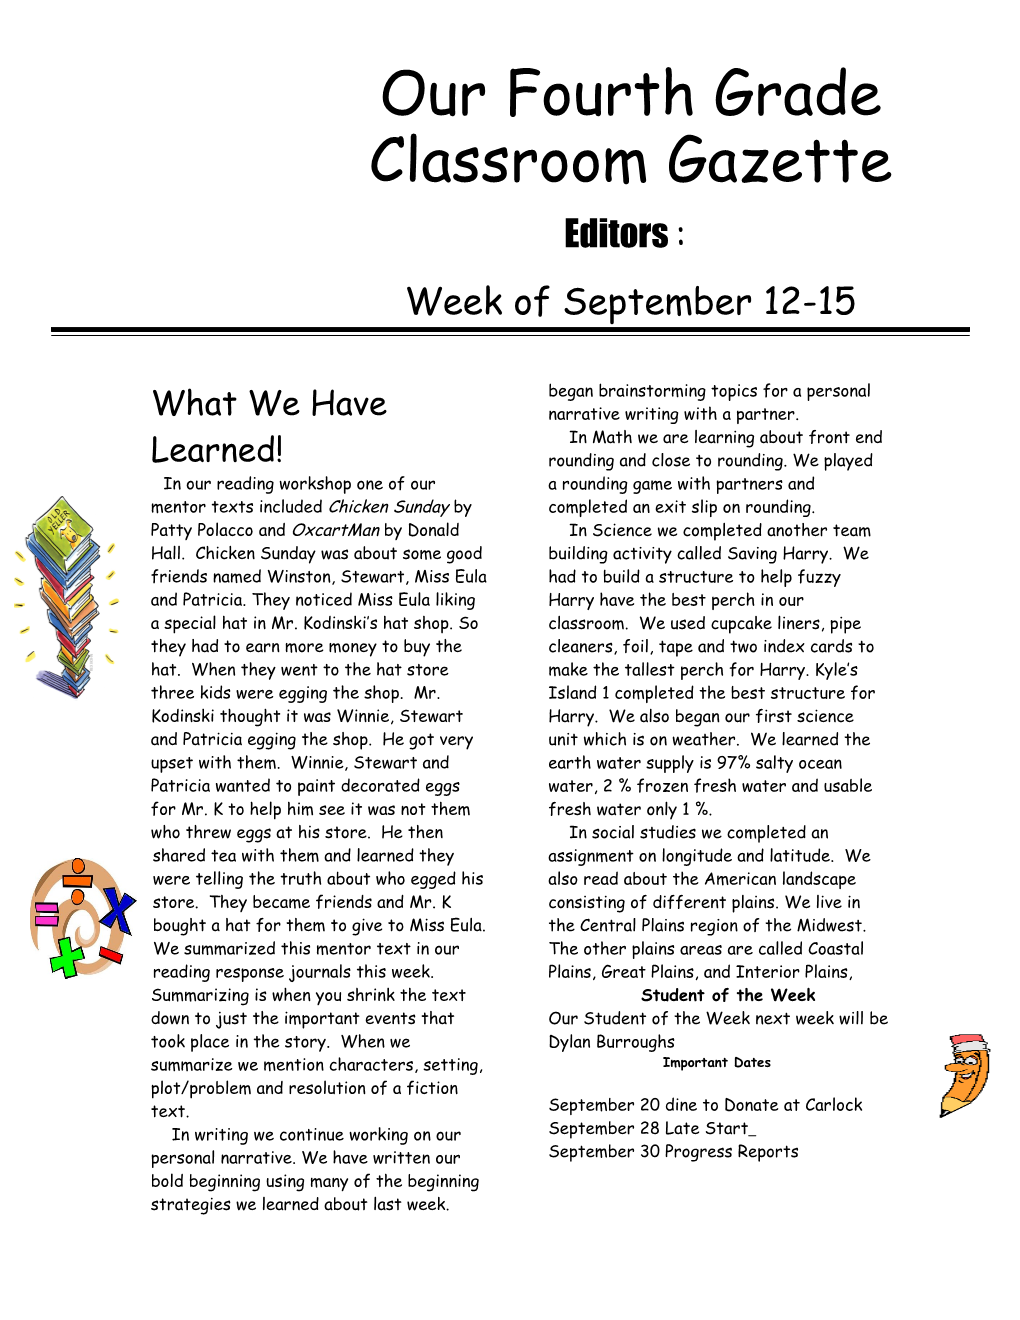 Our Fourth Grade Classroom Gazette